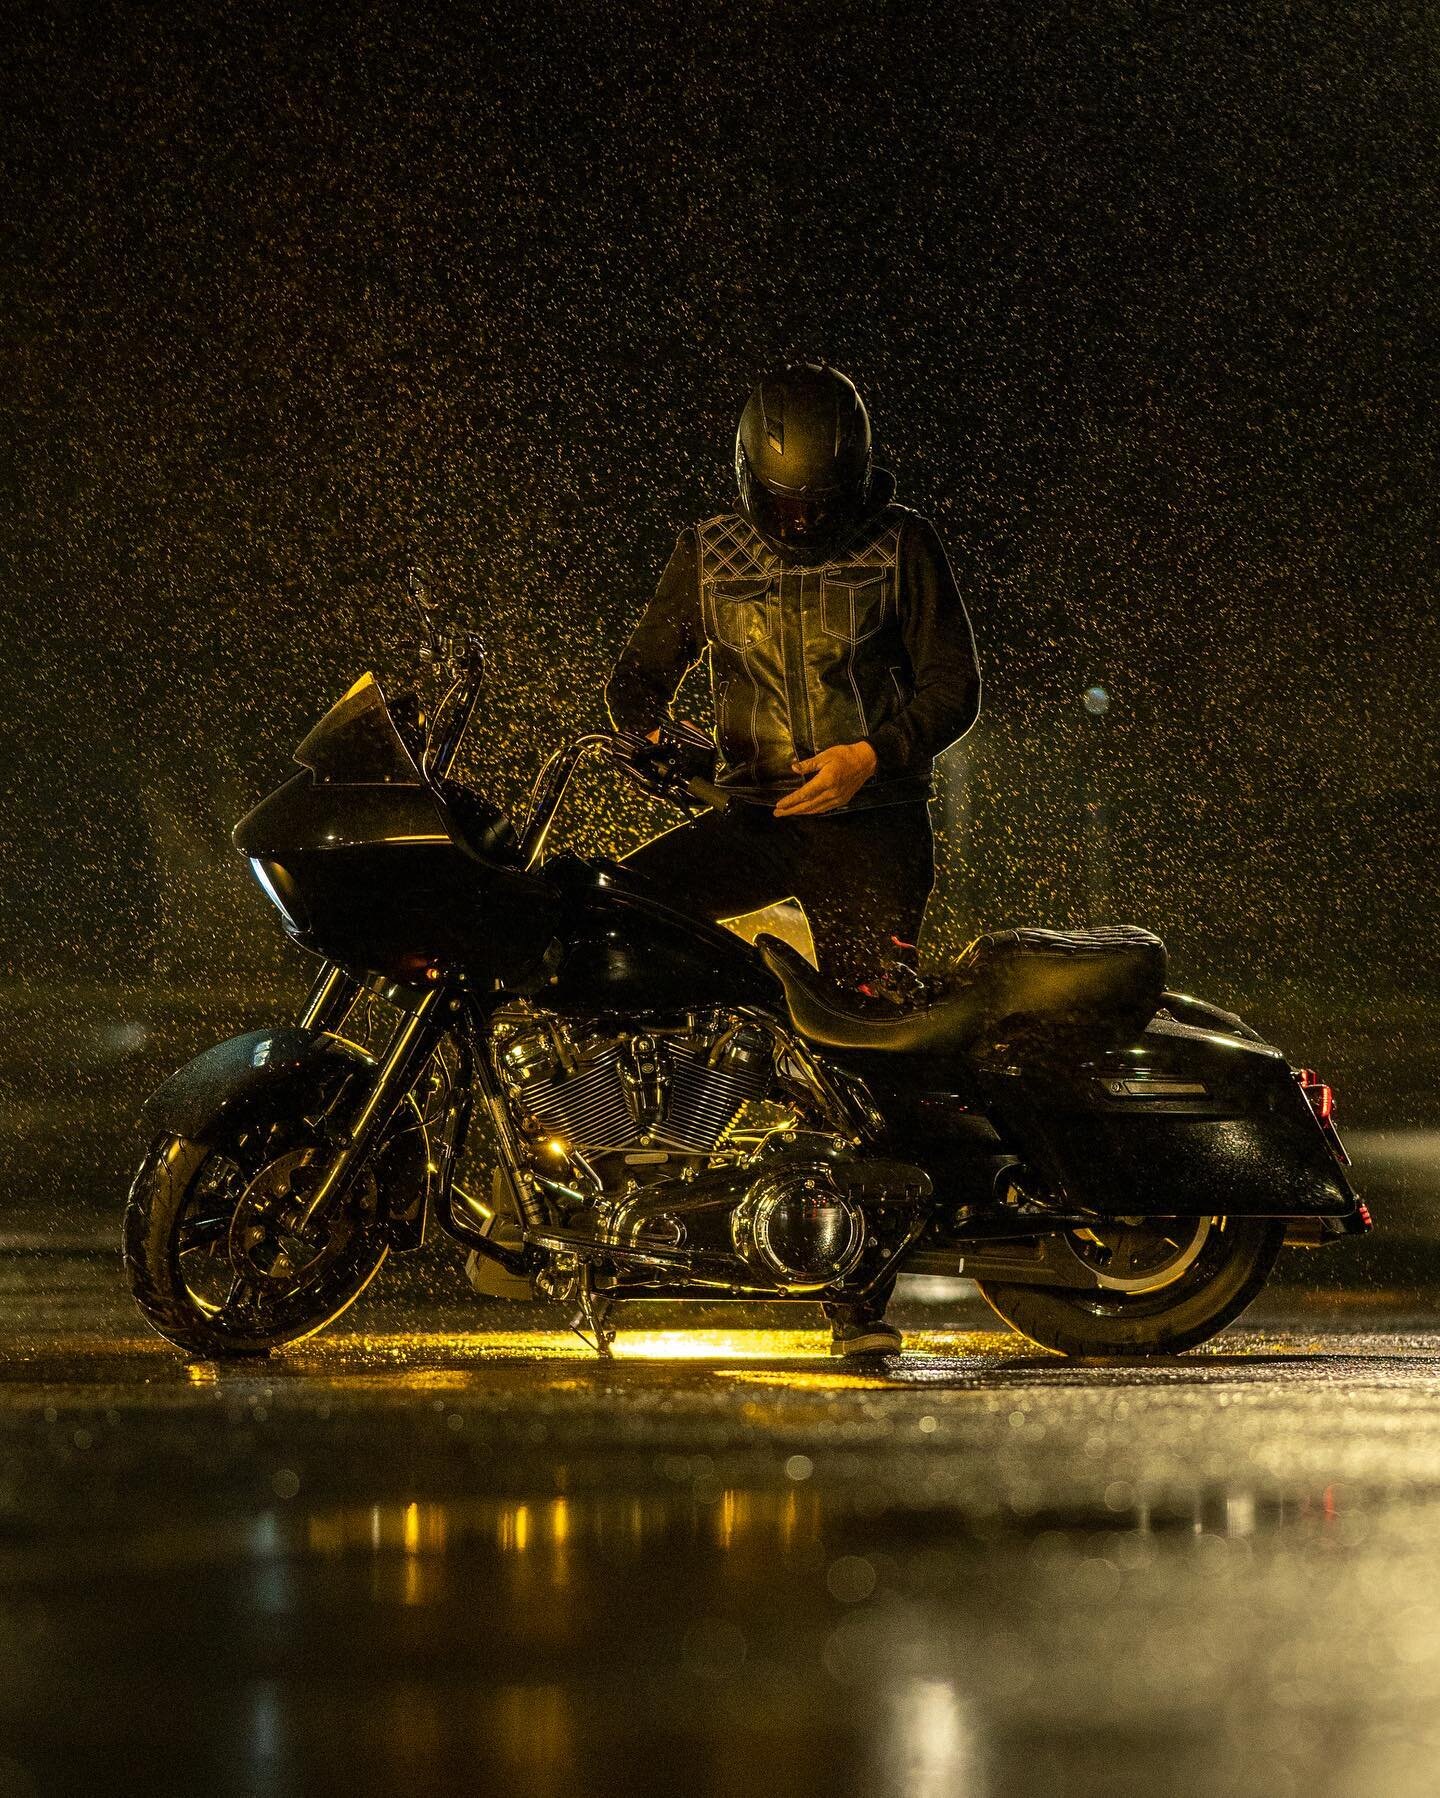 Unpaid for special FX: Rain
Resulted in this dark night vibe thanks to @garetmclendon .
.
.
.
#moist #rainman #rainmakeswaterfalls #stormyweather #scvphotographer #scvnights #scvphotography #scv #661 #strobesnmore #harleydavidson #harley #bikenight #